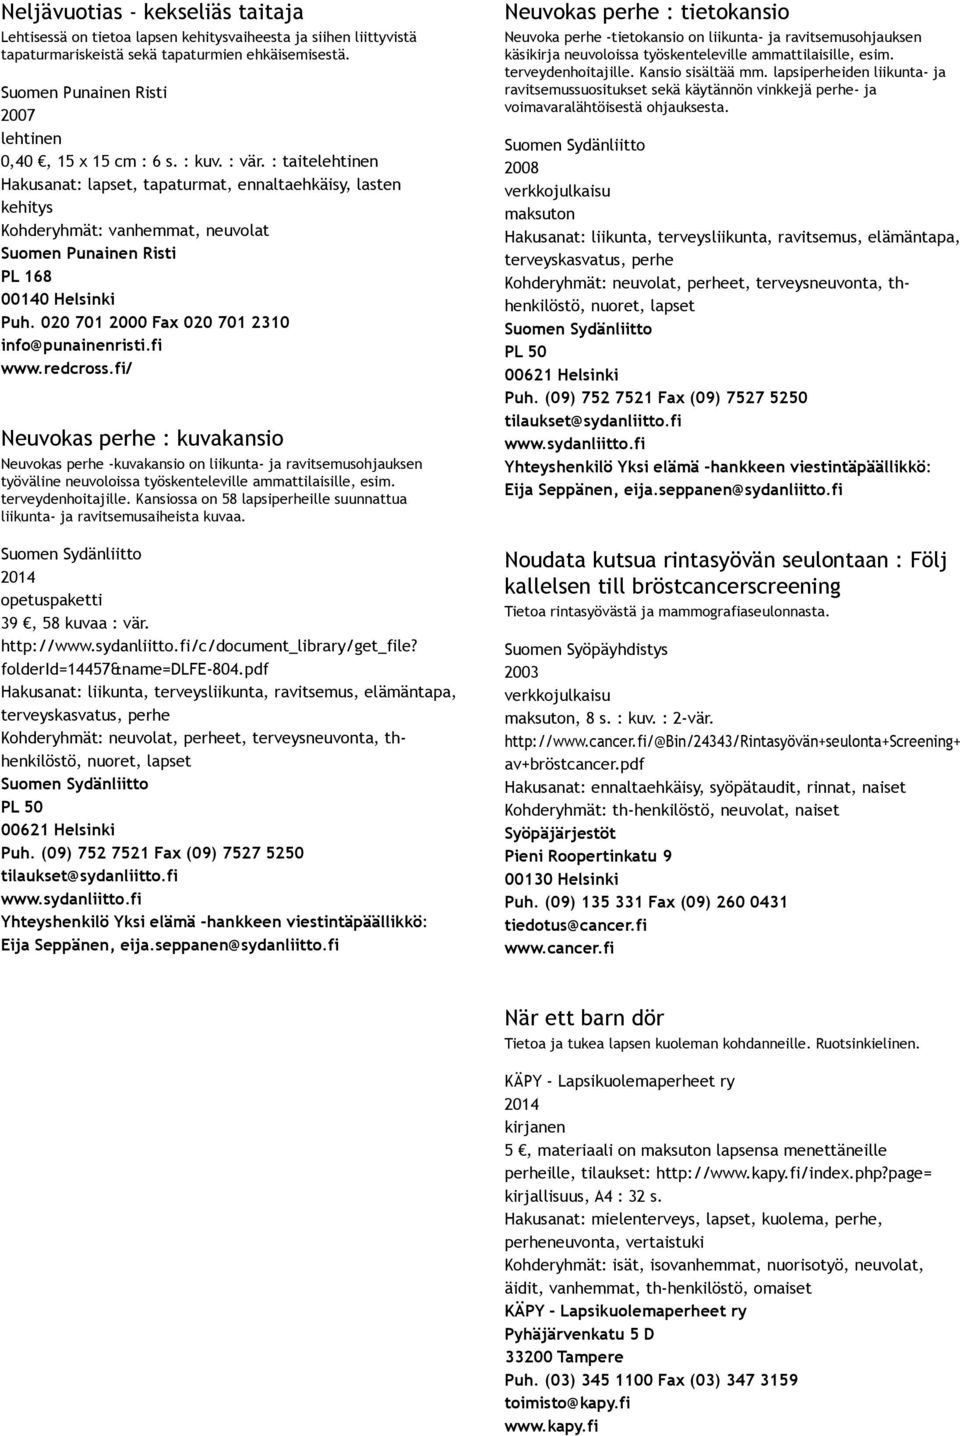 Kansiossa on 58 lapsiperheille suunnattua liikunta ja ravitsemusaiheista kuvaa. Suomen Sydänliitto opetuspaketti 39, 58 kuvaa : vär. http://www.sydanliitto.fi/c/document_library/get_file?